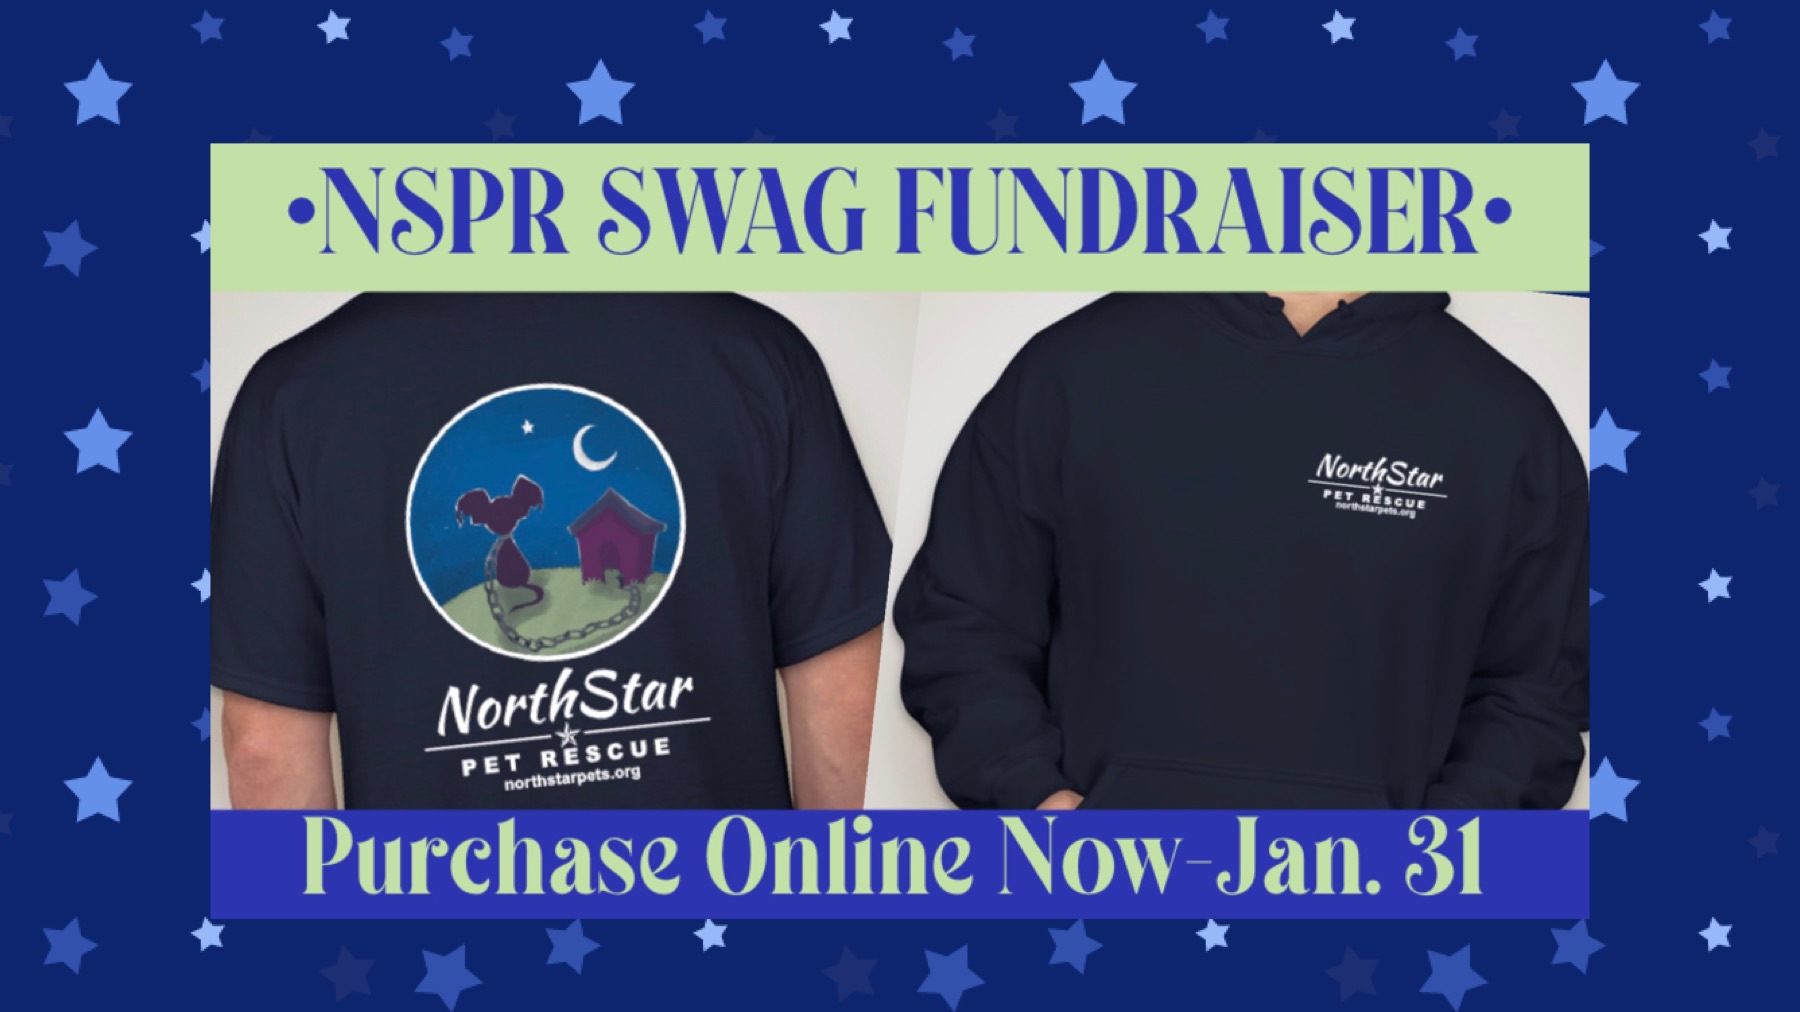 NorthStar Swag Fundraiser